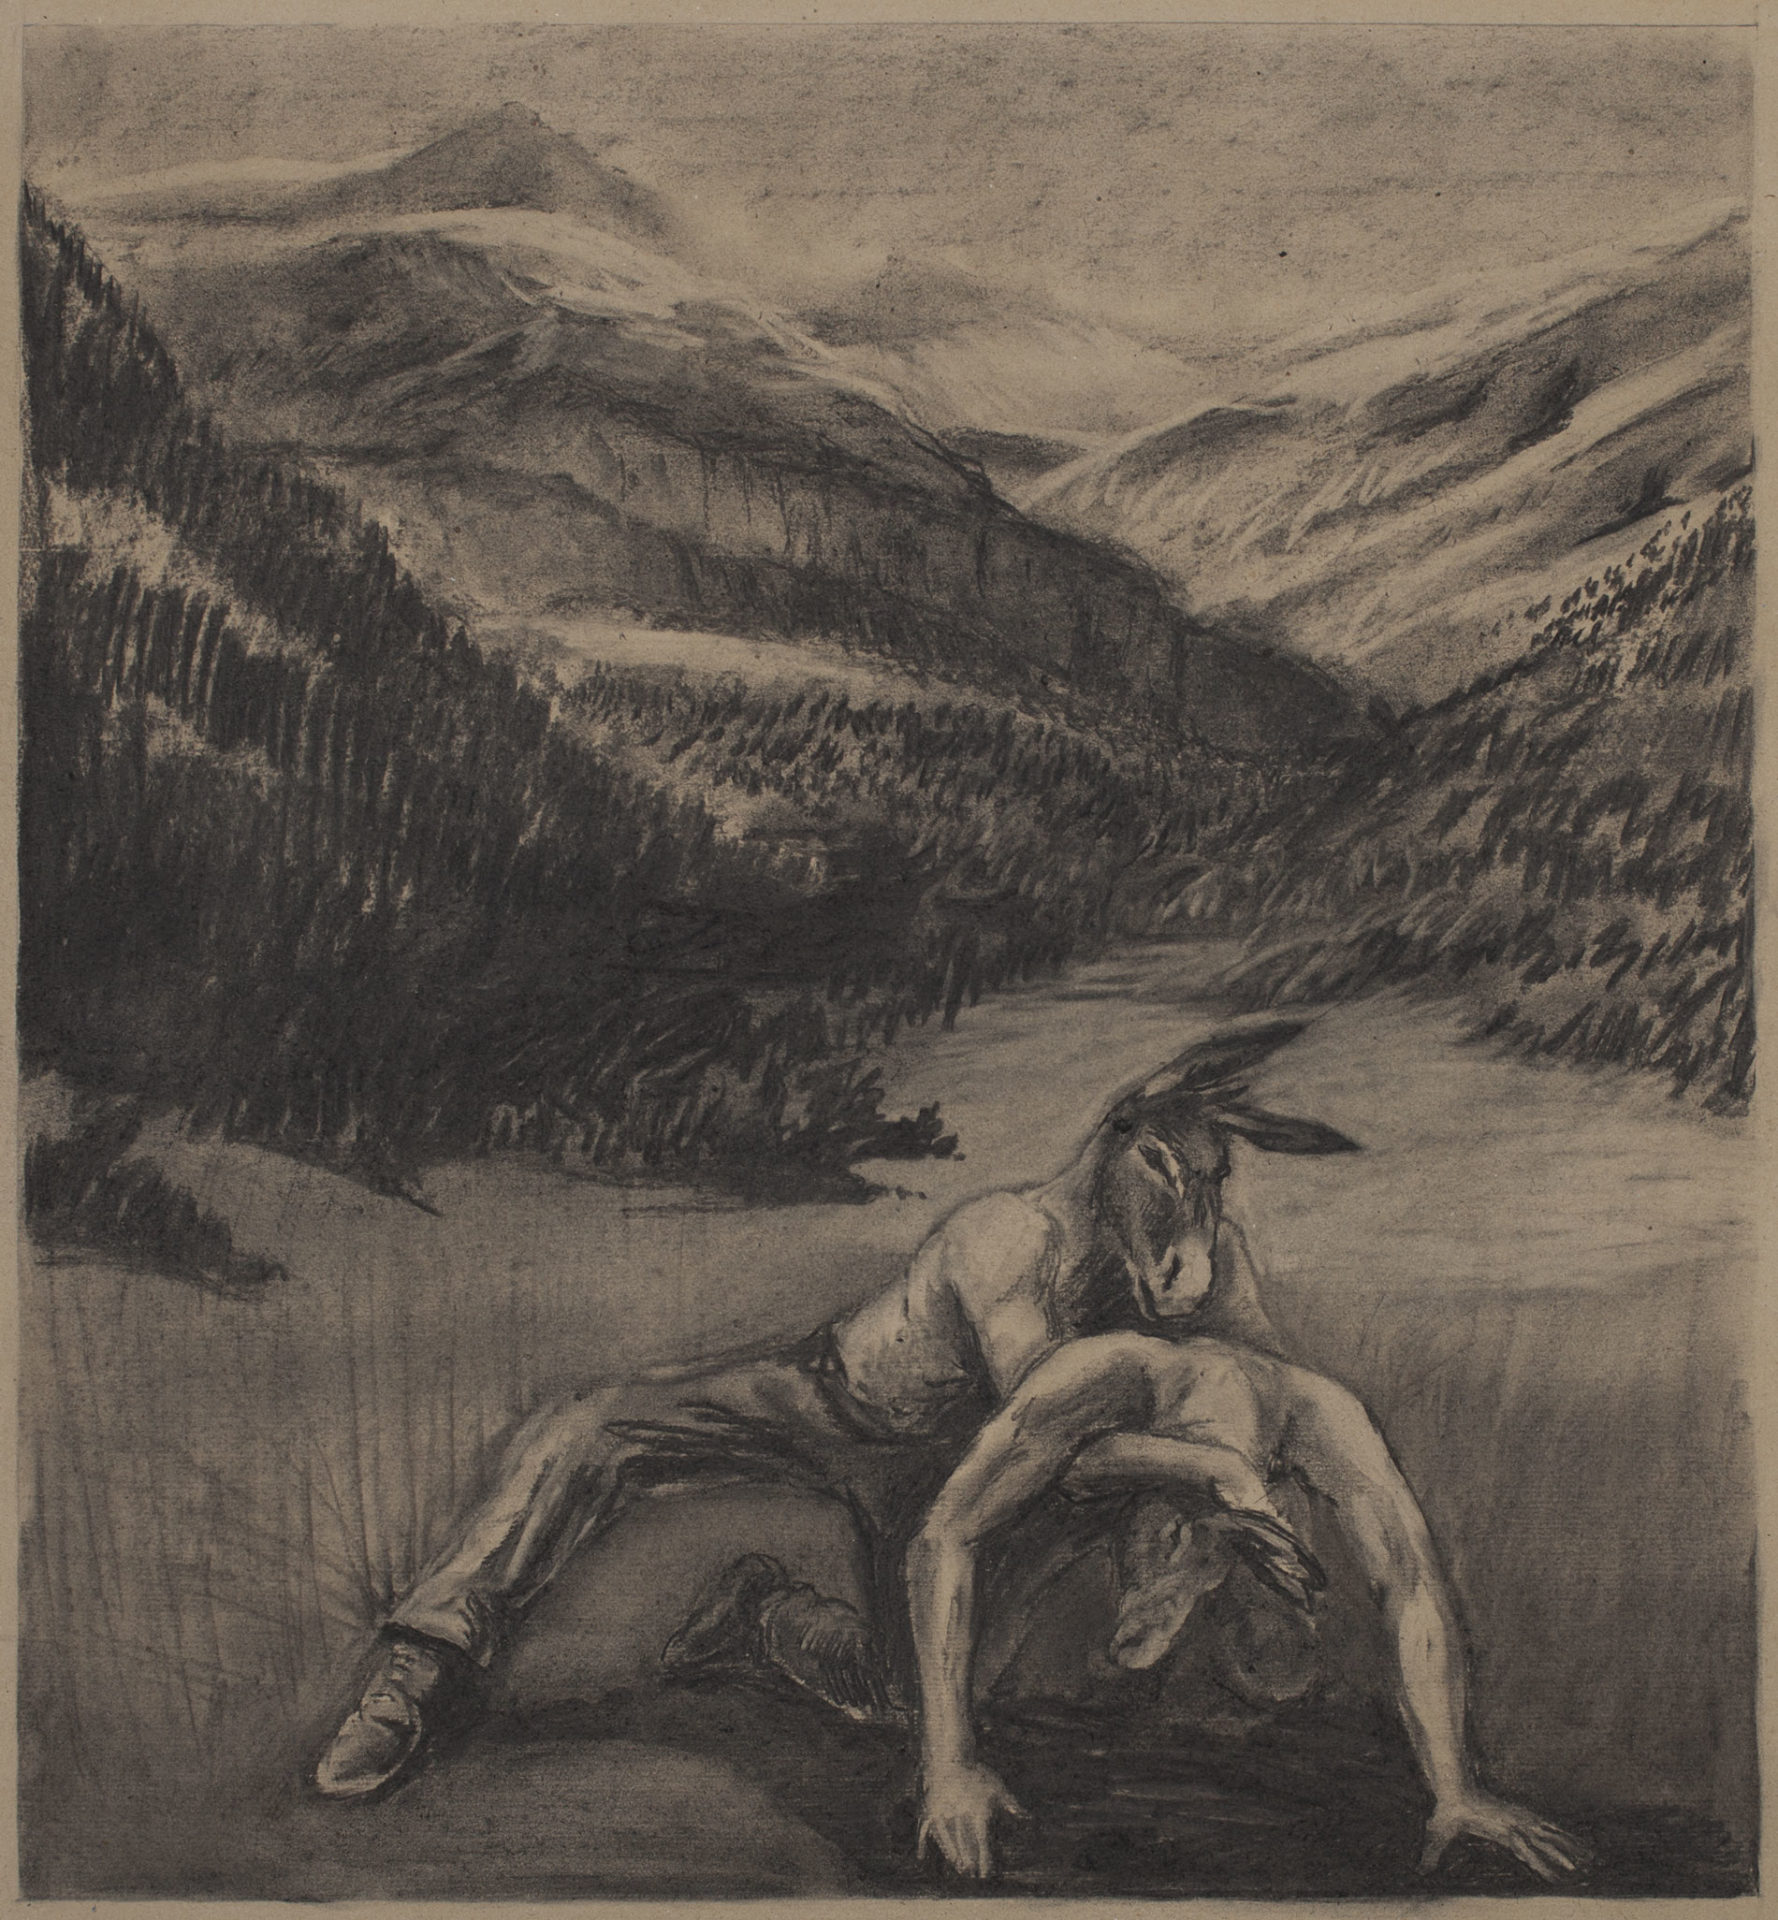 Toujours la même histoire, Fusain sur papier, 83 x 80 cm, 2011, Collection privée